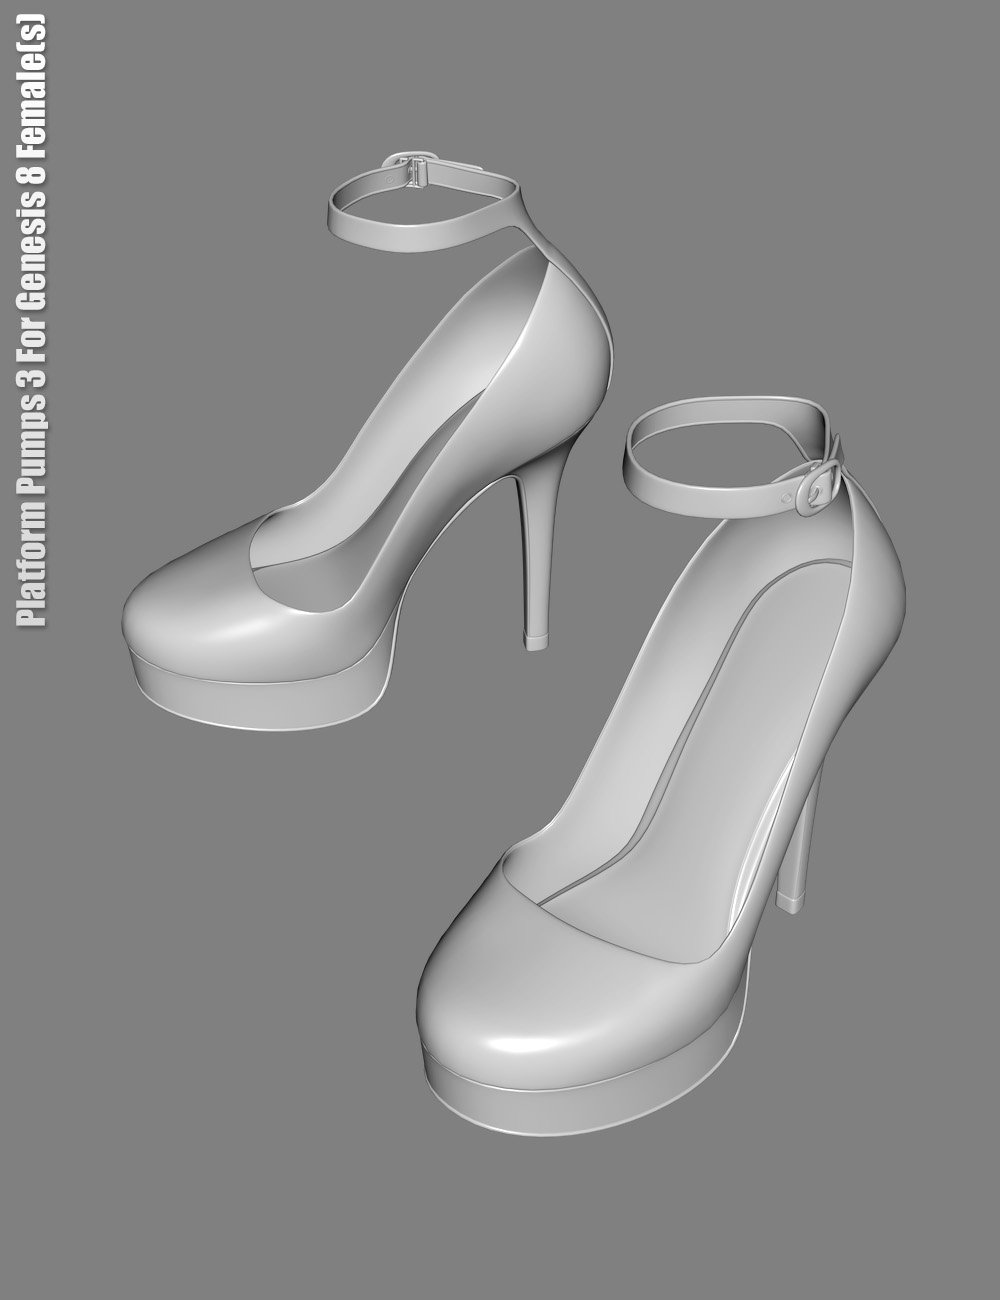 Platform Pumps 3 for Genesis 8 Female(s) by: dx30, 3D Models by Daz 3D